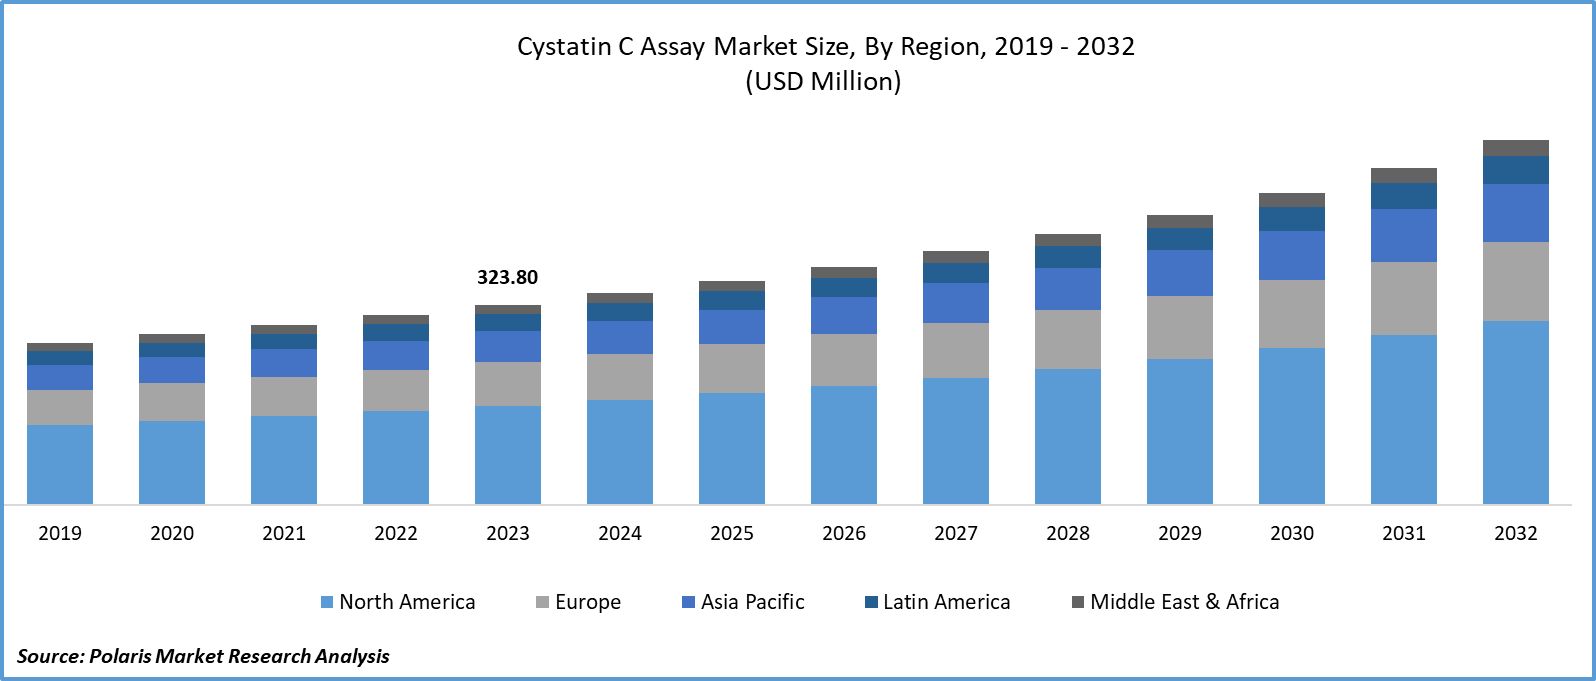 Cystatin C Assay Market Size